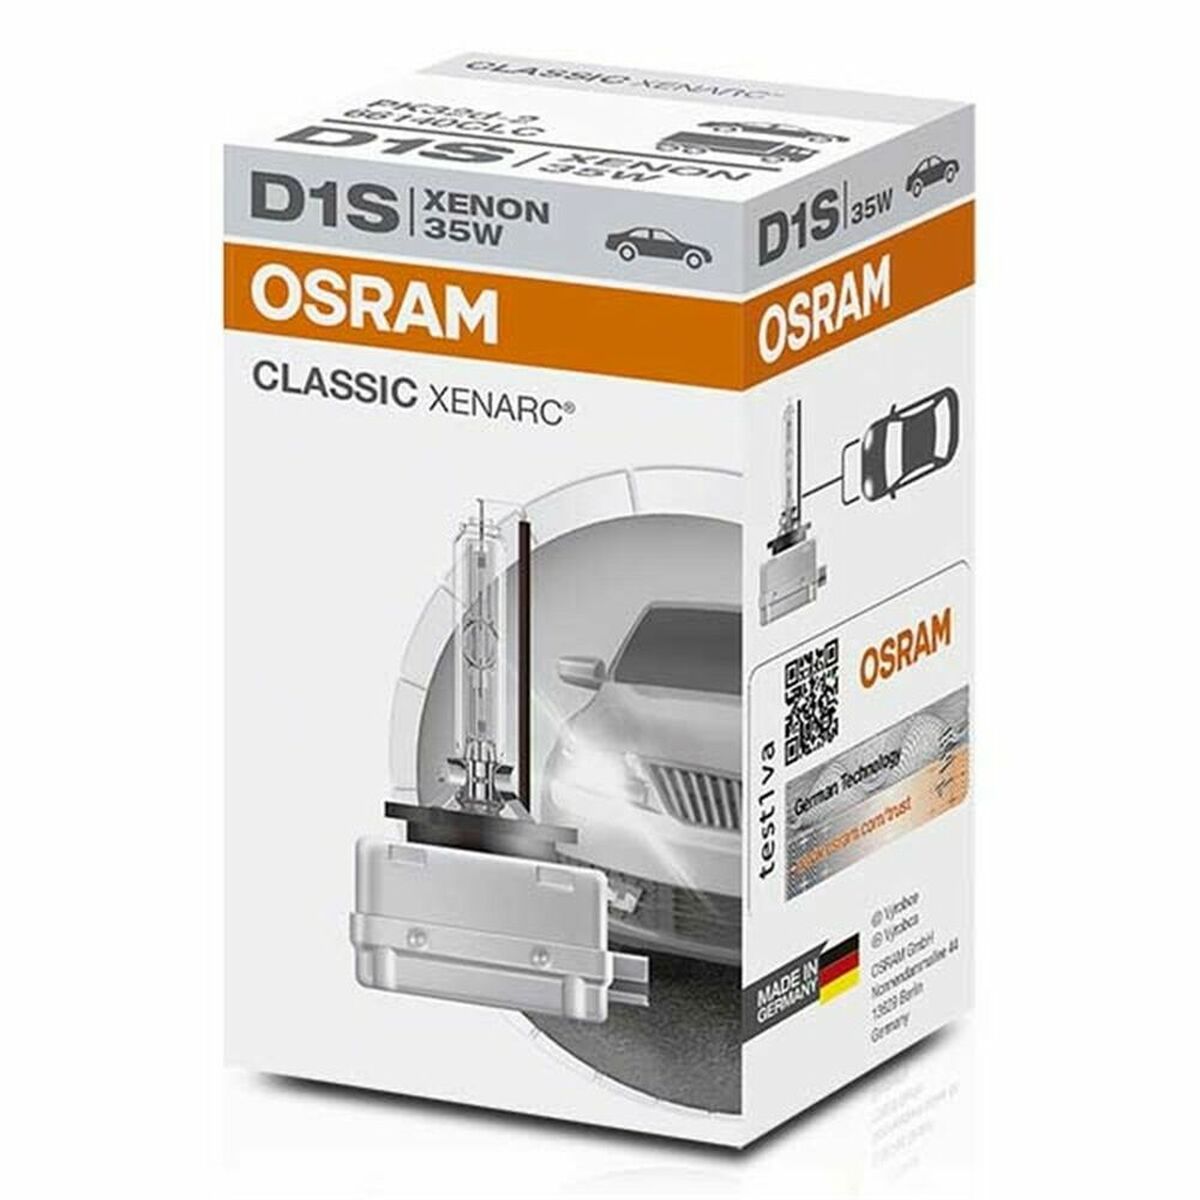 Osta tuote Autopolttimo Osram OS66140CLC 4150k 35W D1S verkkokaupastamme Korhone: Urheilu & Vapaa-aika 10% alennuksella koodilla KORHONE